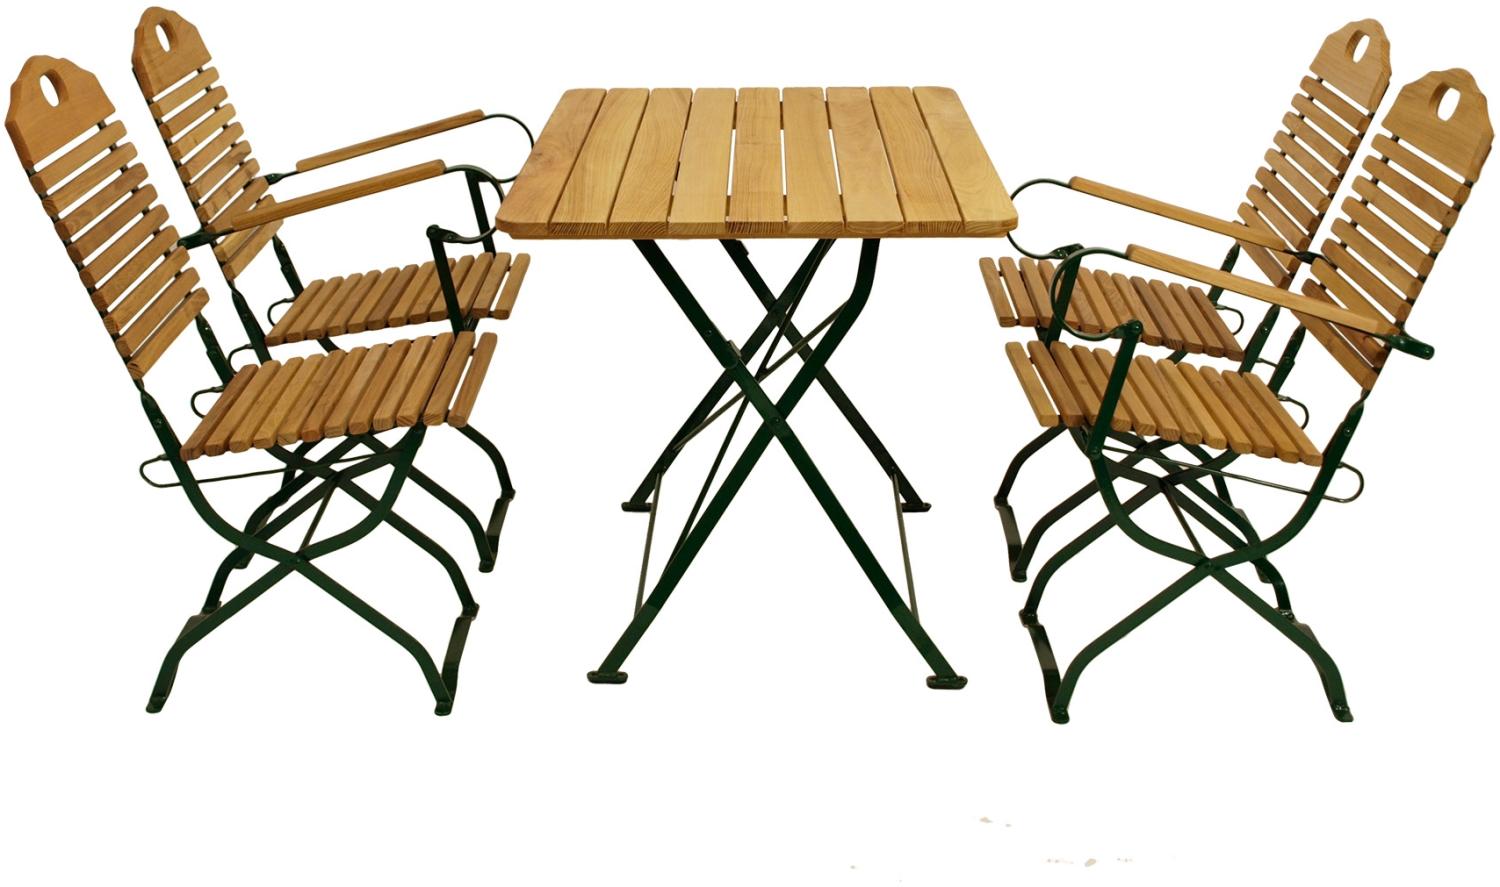 Kurgarten - Garnitur BAD TÖLZ 5-teilig (2x Stuhl, 2x Armlehnensessel, 1x Tisch 70x110cm), Flachstahl grün + Robinie, klappbar Bild 1